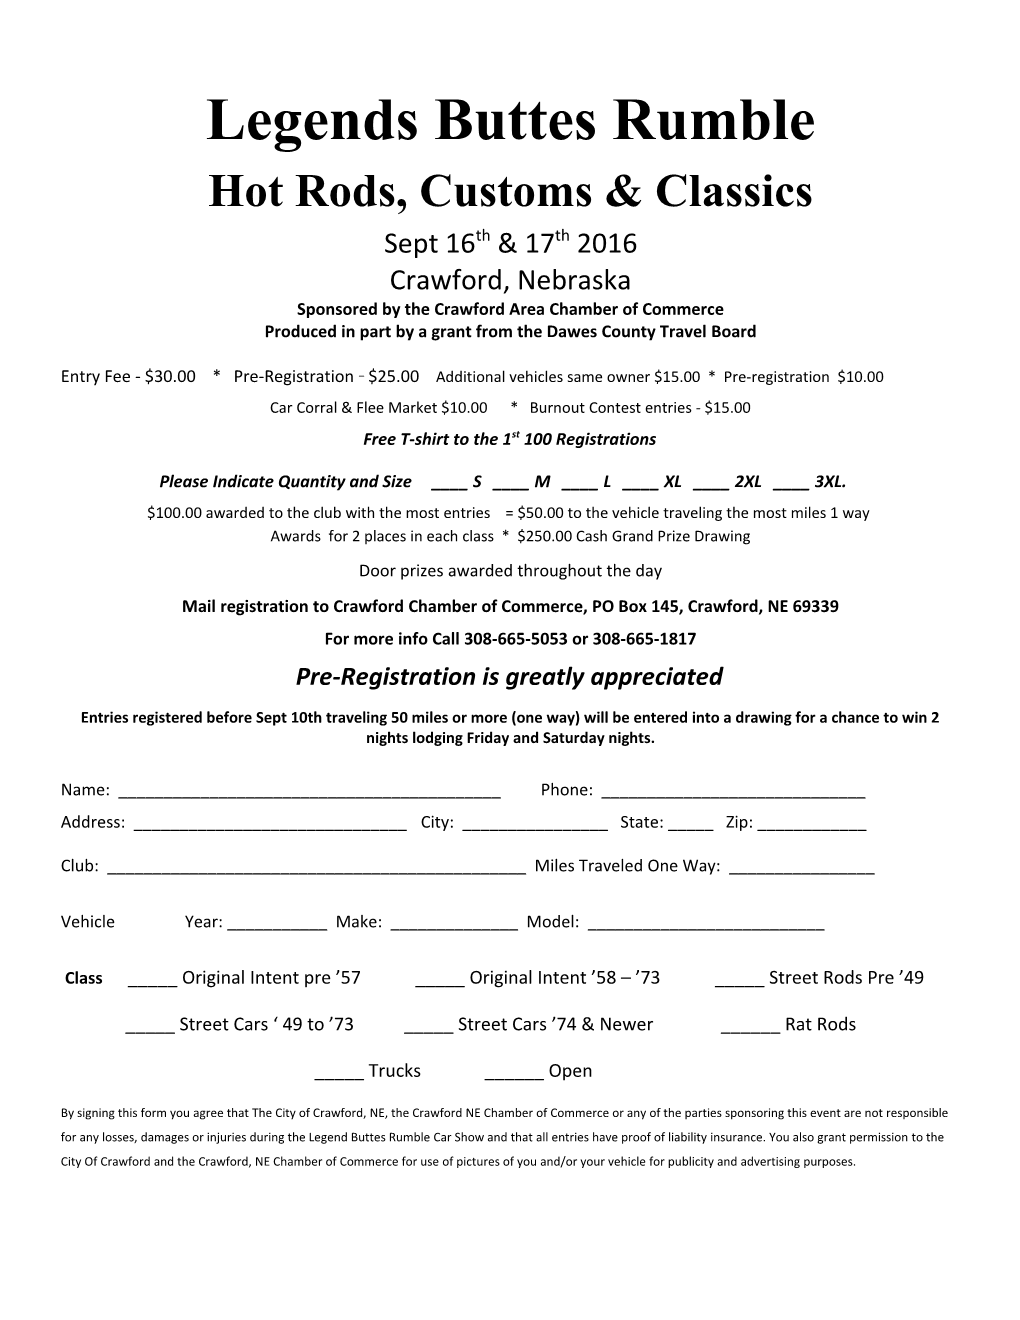 Hot Rods, Customs & Classics